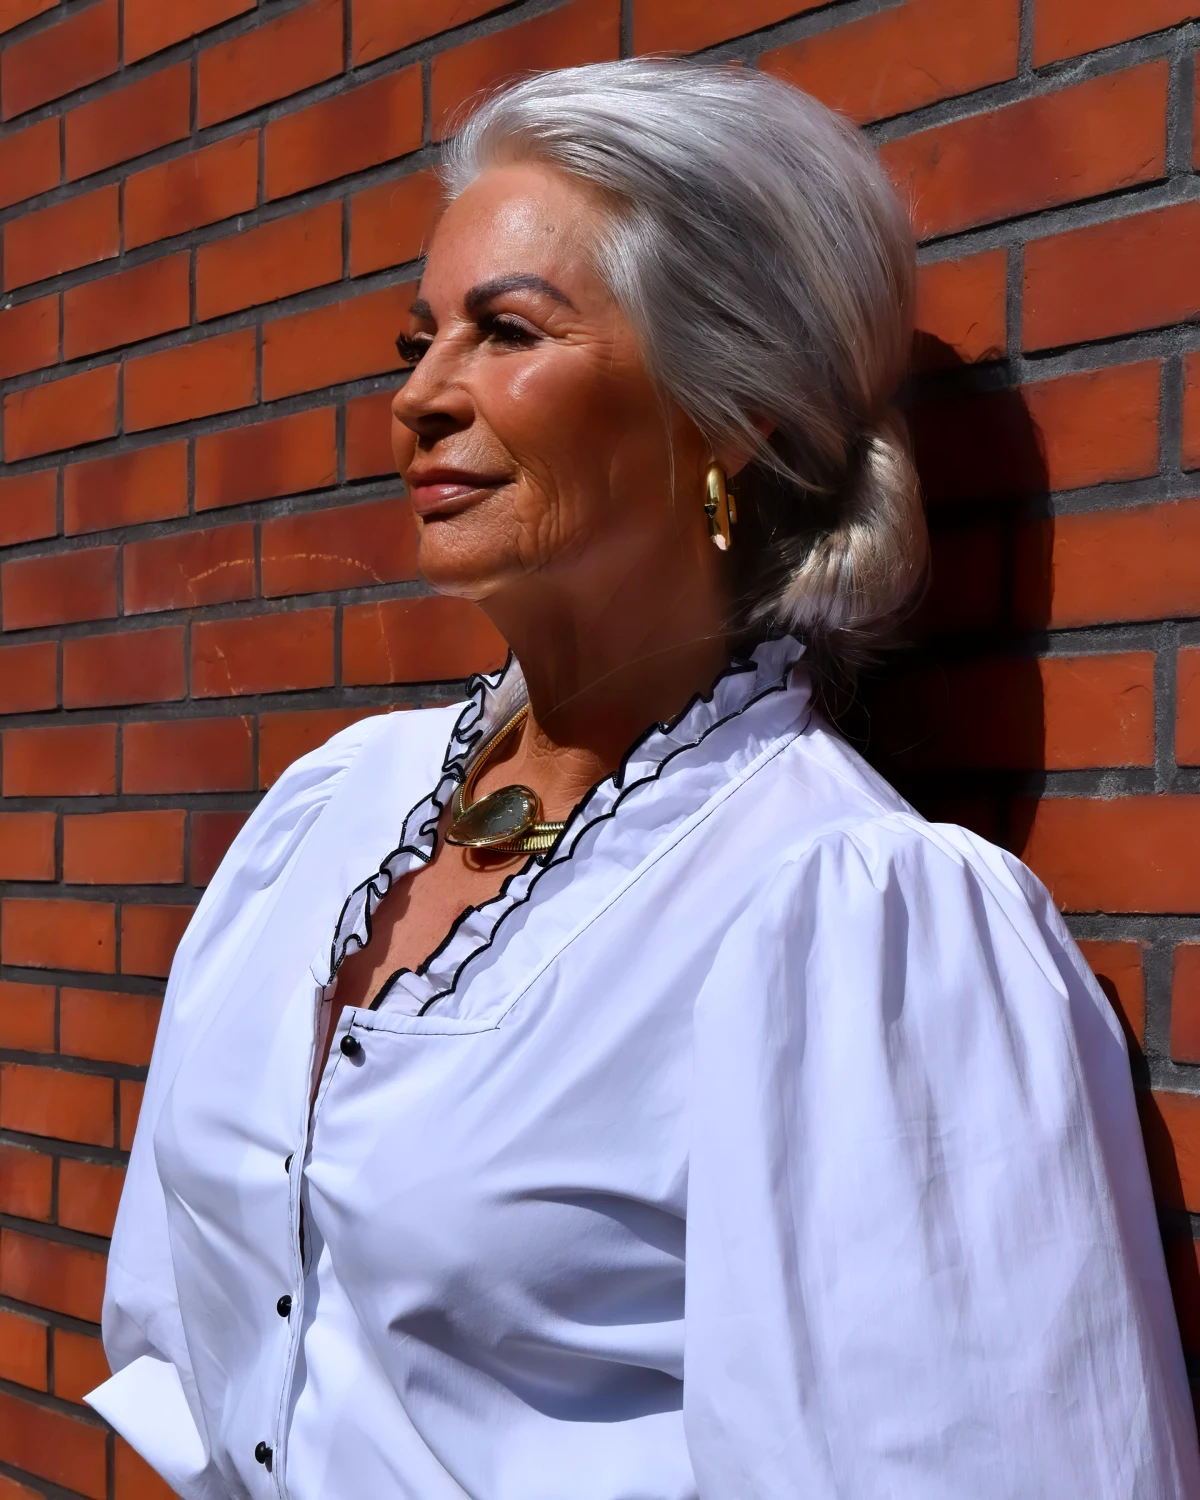 chemiser blanc blouse avec un bijoux femme cheveux gris contre un mur a briques